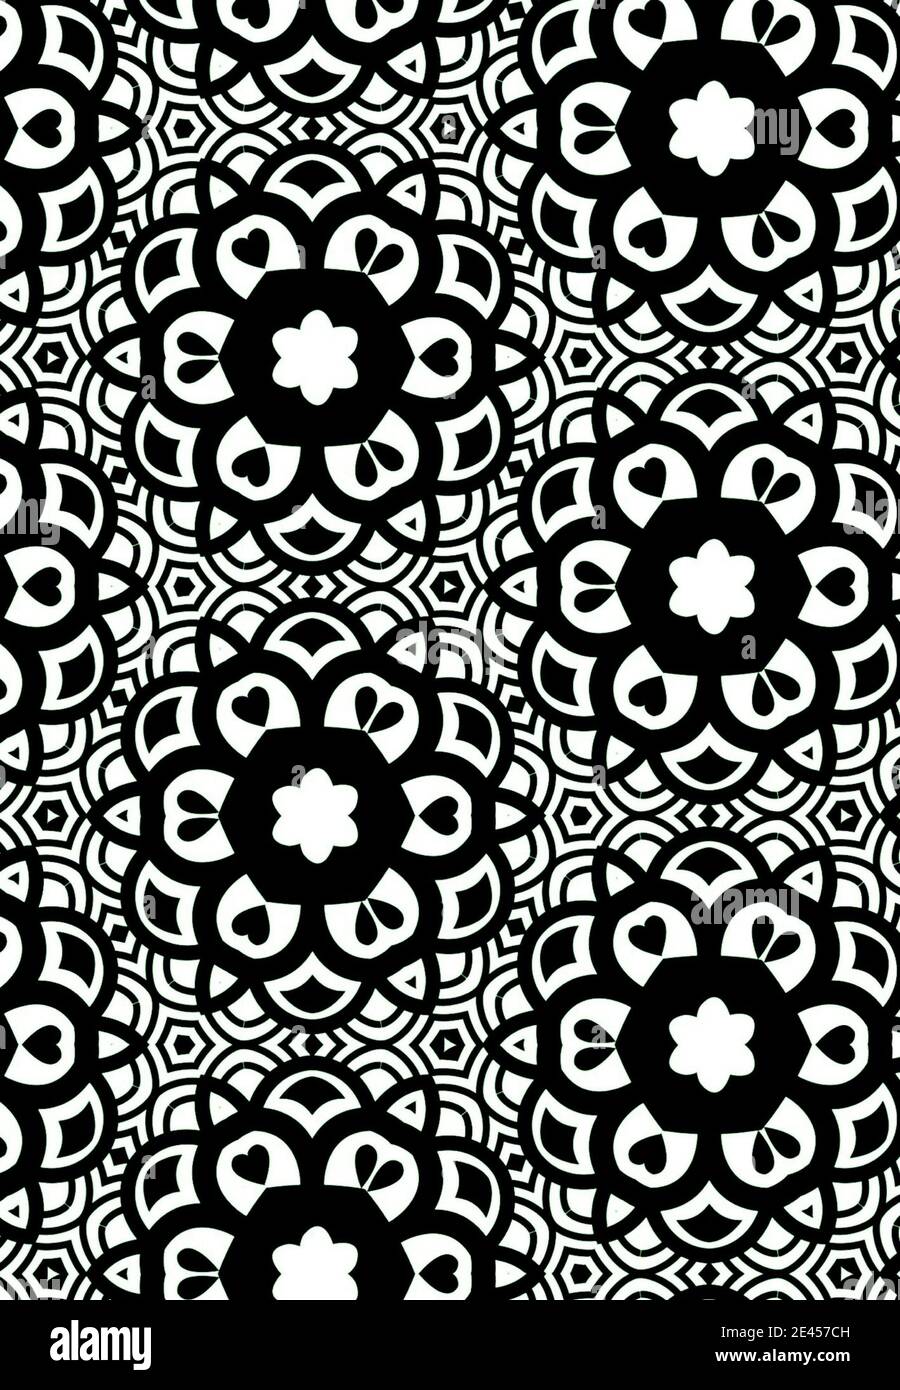 Illustration d'un motif noir et blanc incolore à motif floral ornements symboliques Banque D'Images